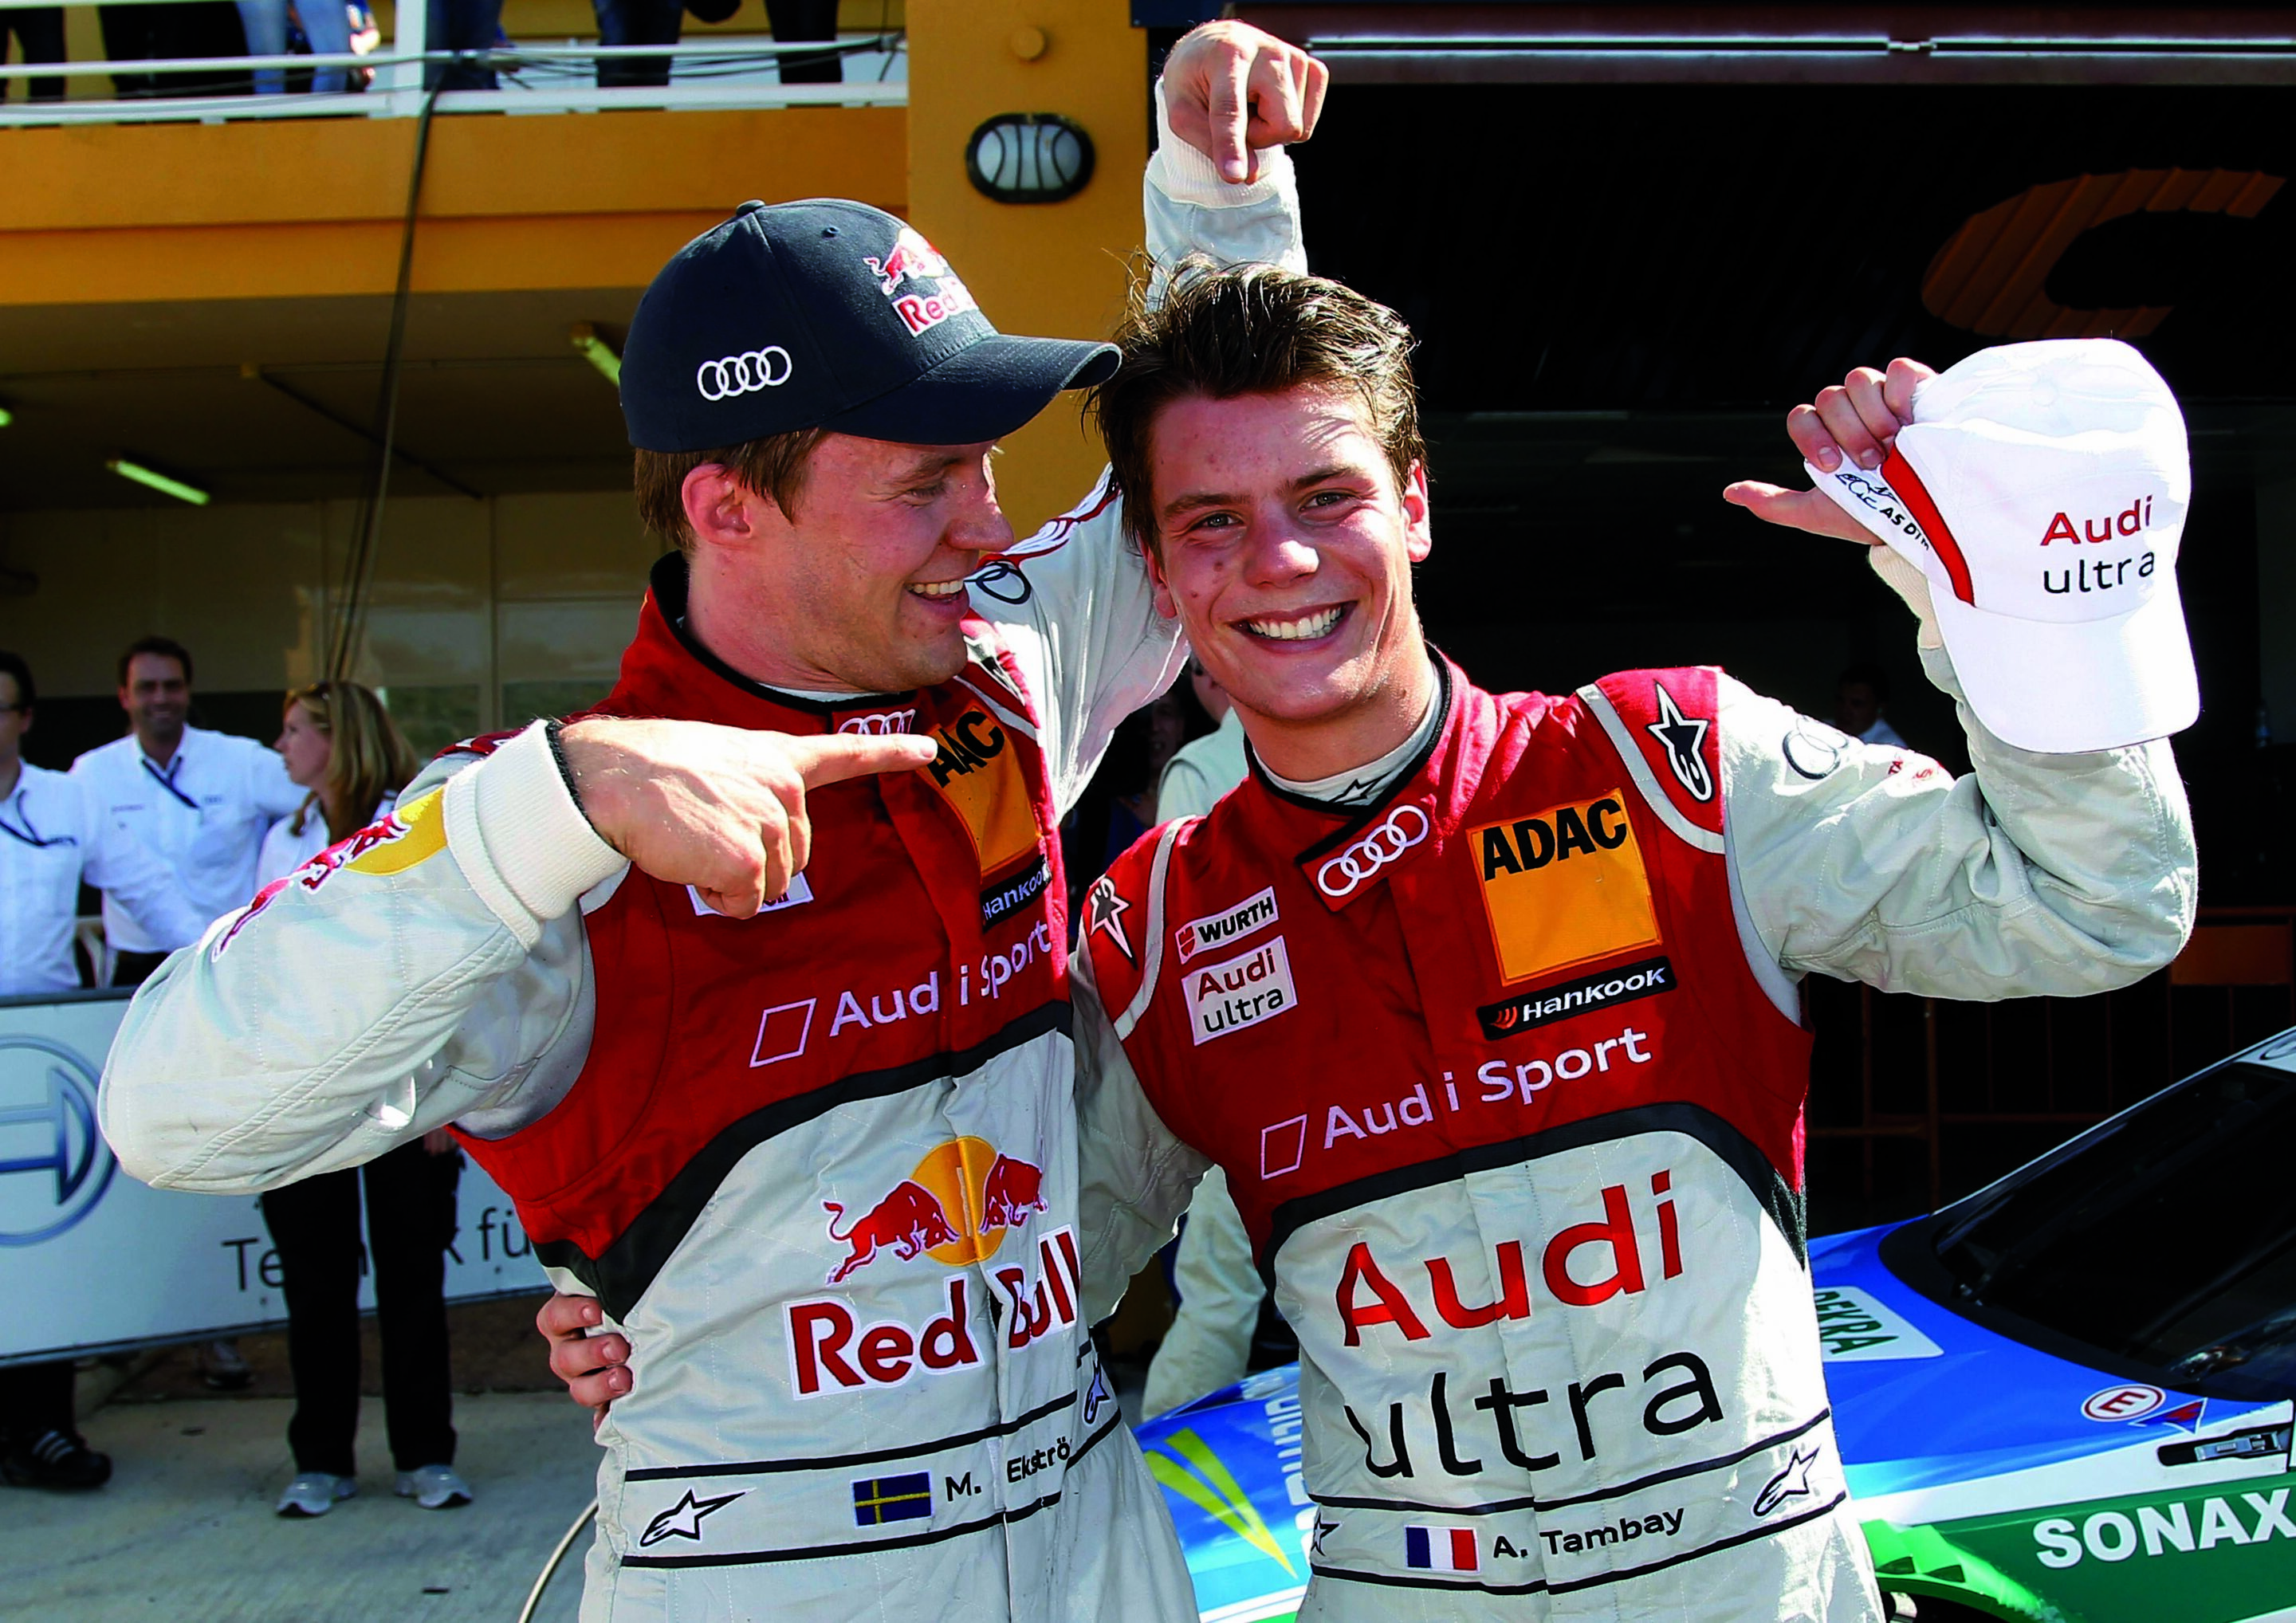 Audi übernimmt Führung in der Hersteller-Meisterschaft der DTM